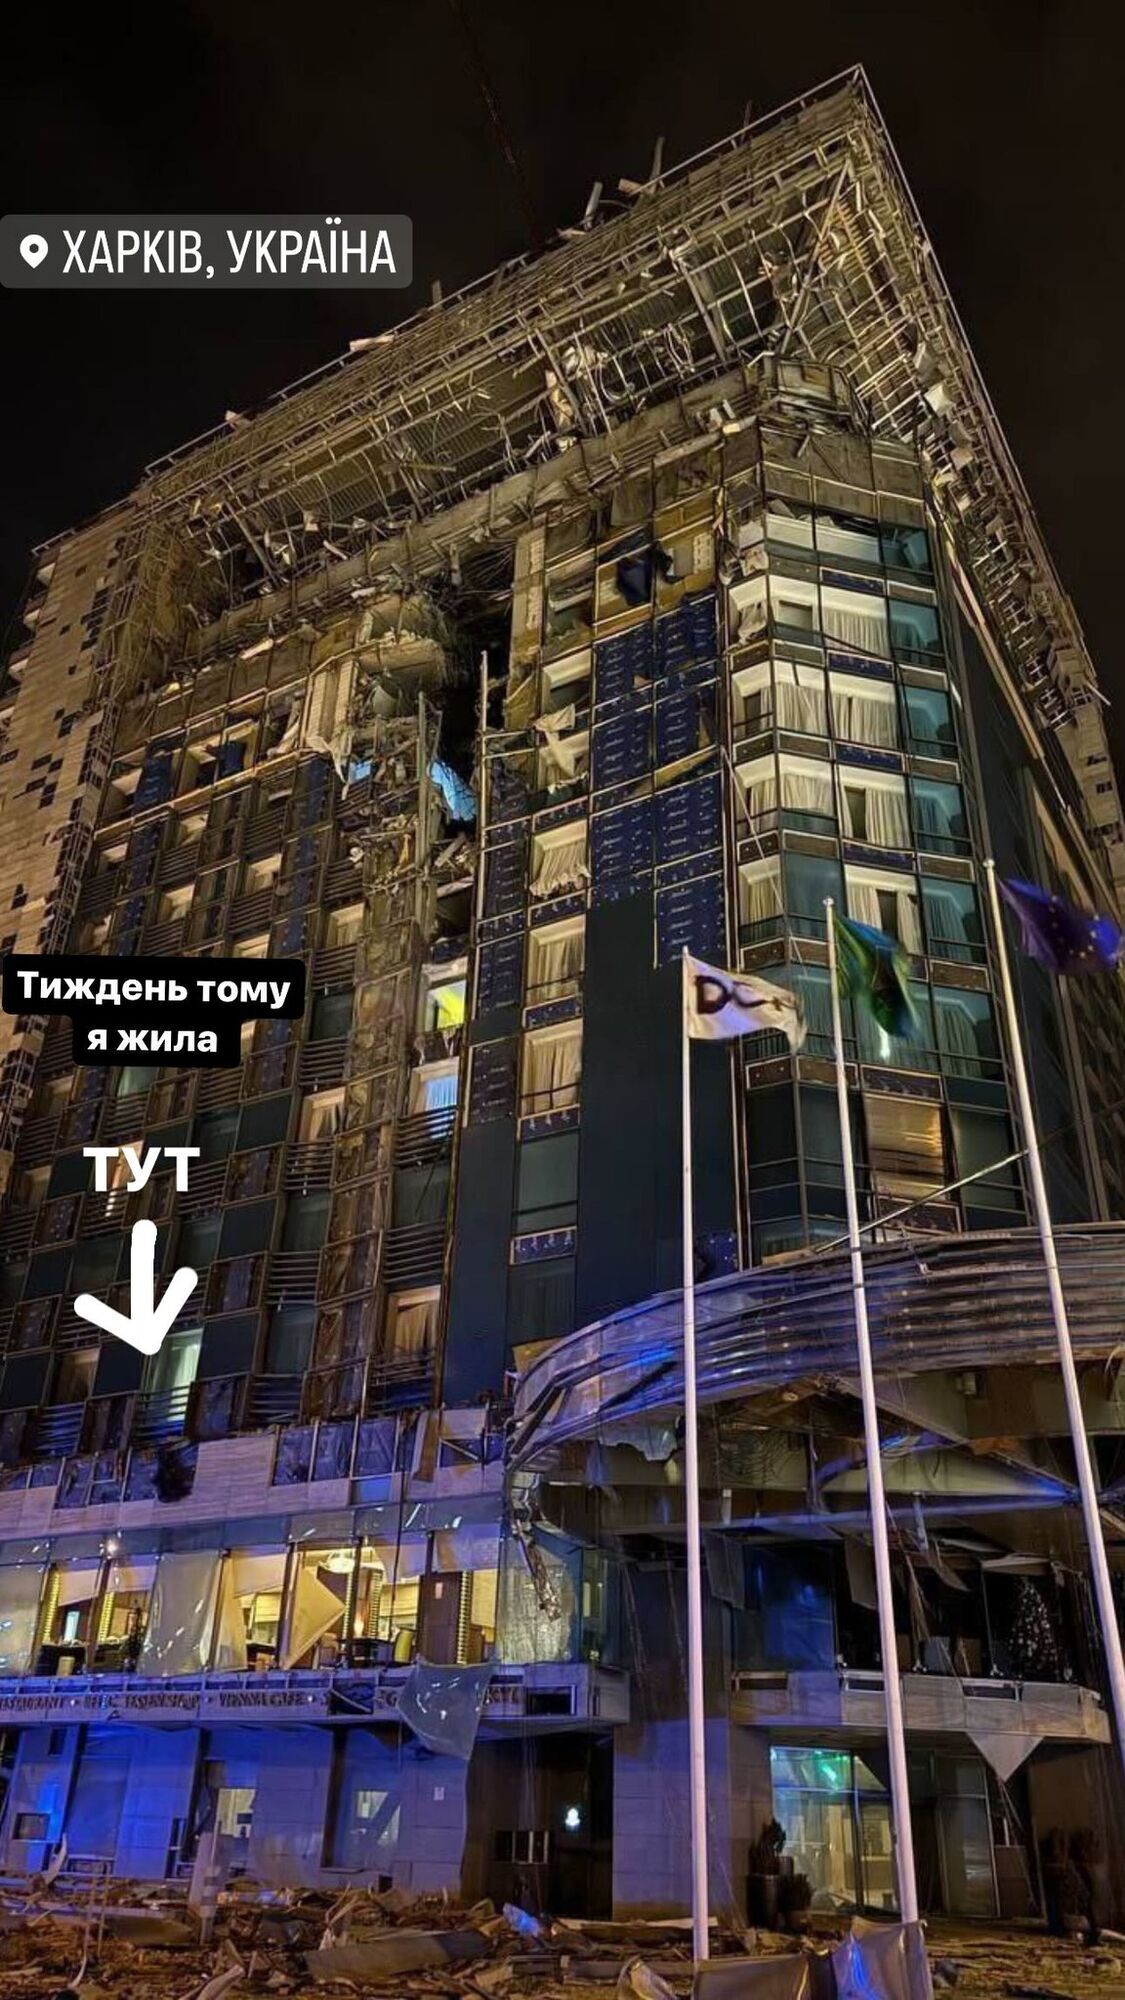 "Тиждень тому я жила тут": Єфросиніна показала зруйнований росіянами готель у Харкові. Фото